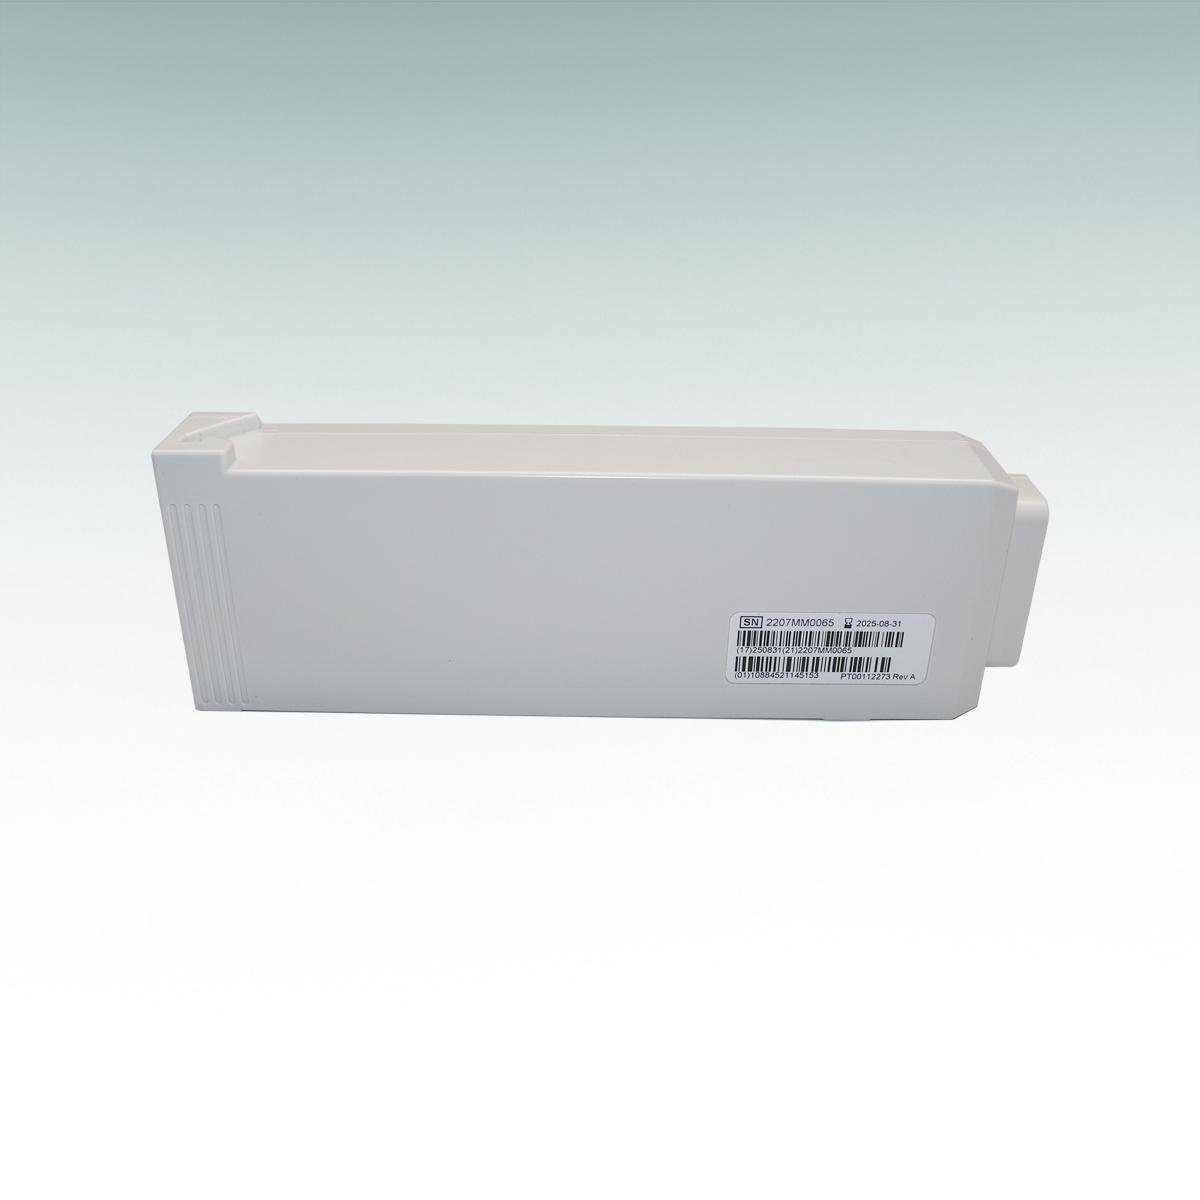 科曼NC8/NC10/NC12病人监护仪原装可充电电池022-000108-00 4